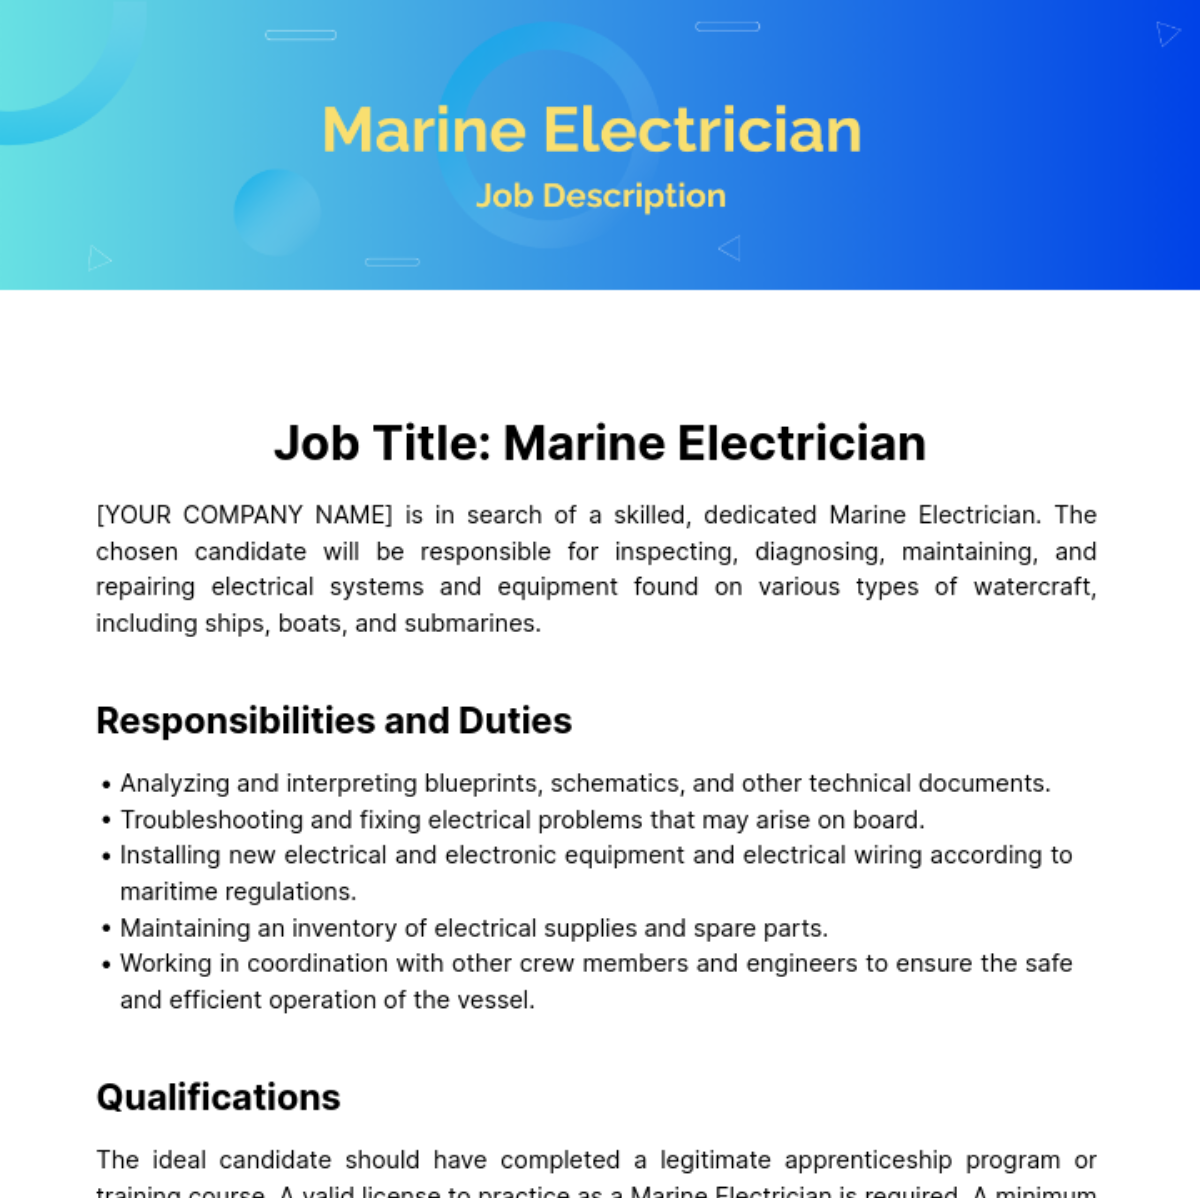 Marine Electrician Job Description Template